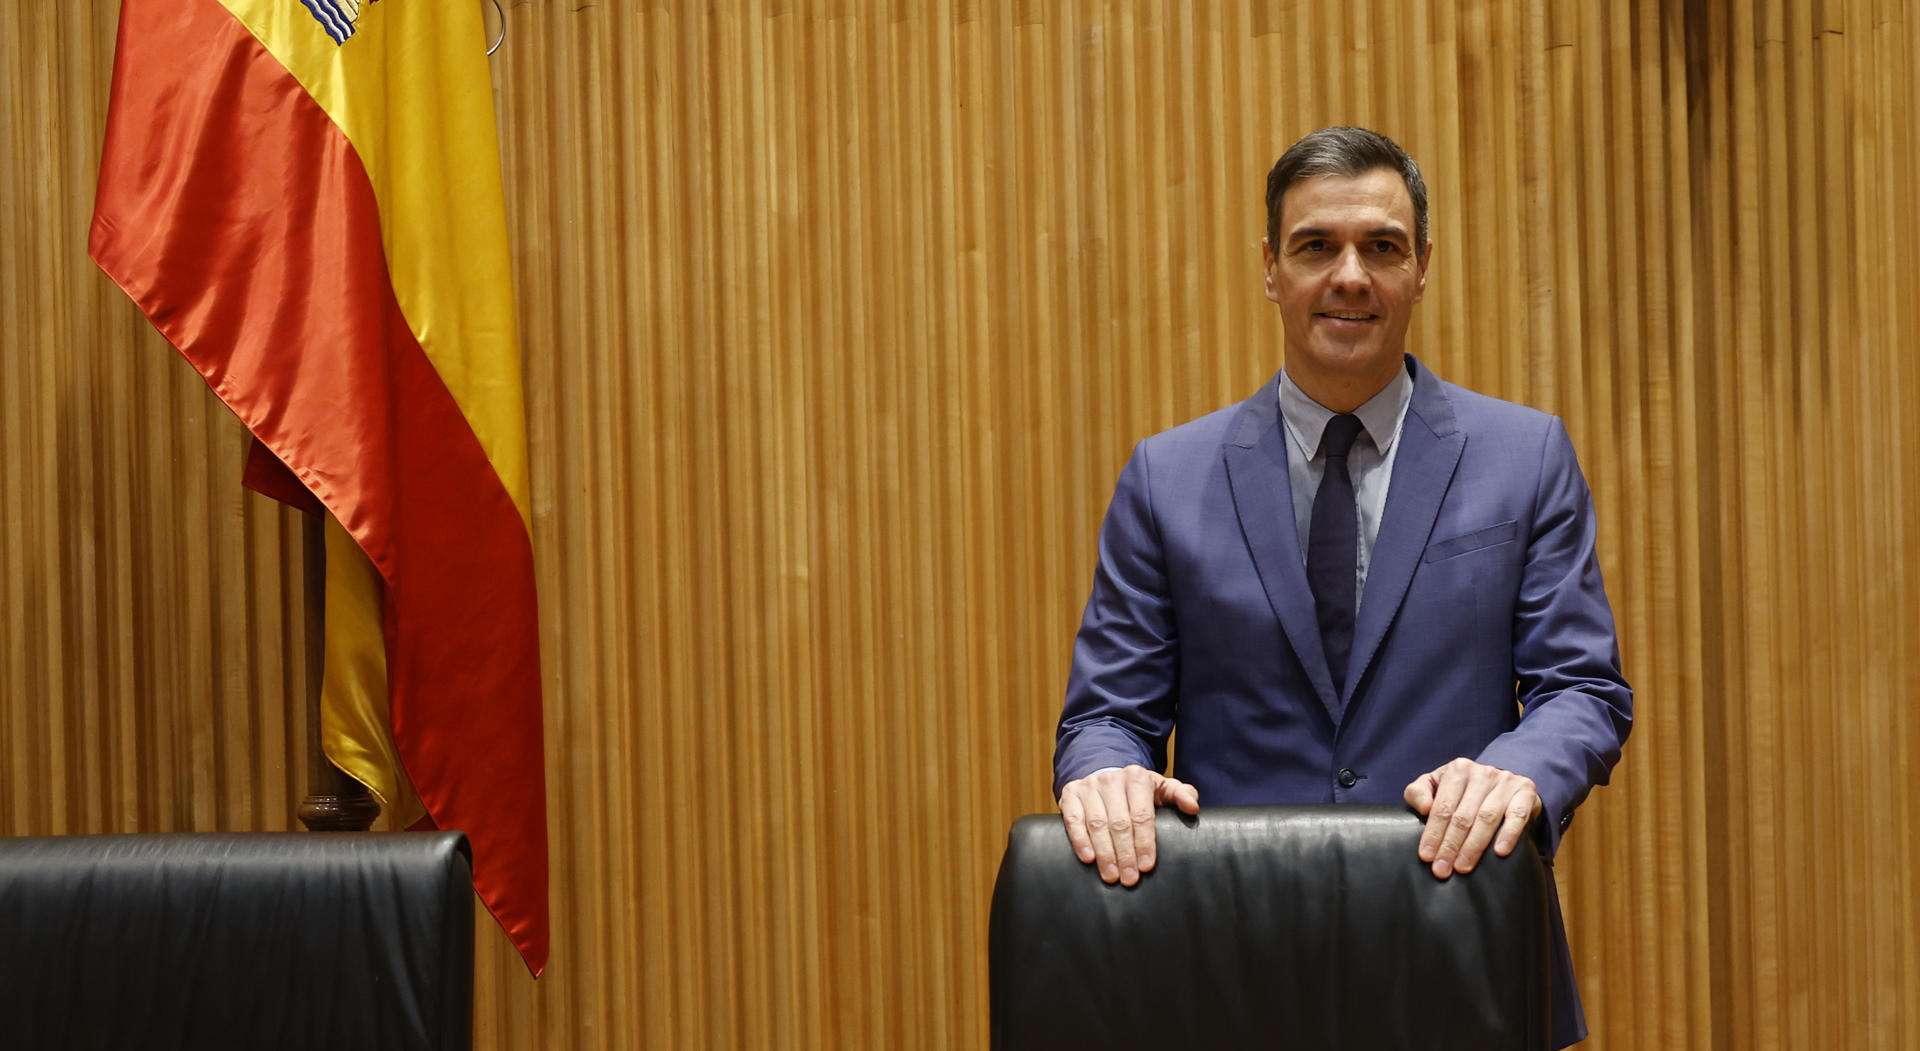 El presidente del Gobierno, Pedro Sánchez, momentos antes de la reunión mantenida este martes en el Congreso con diputados y senadores socialistas.